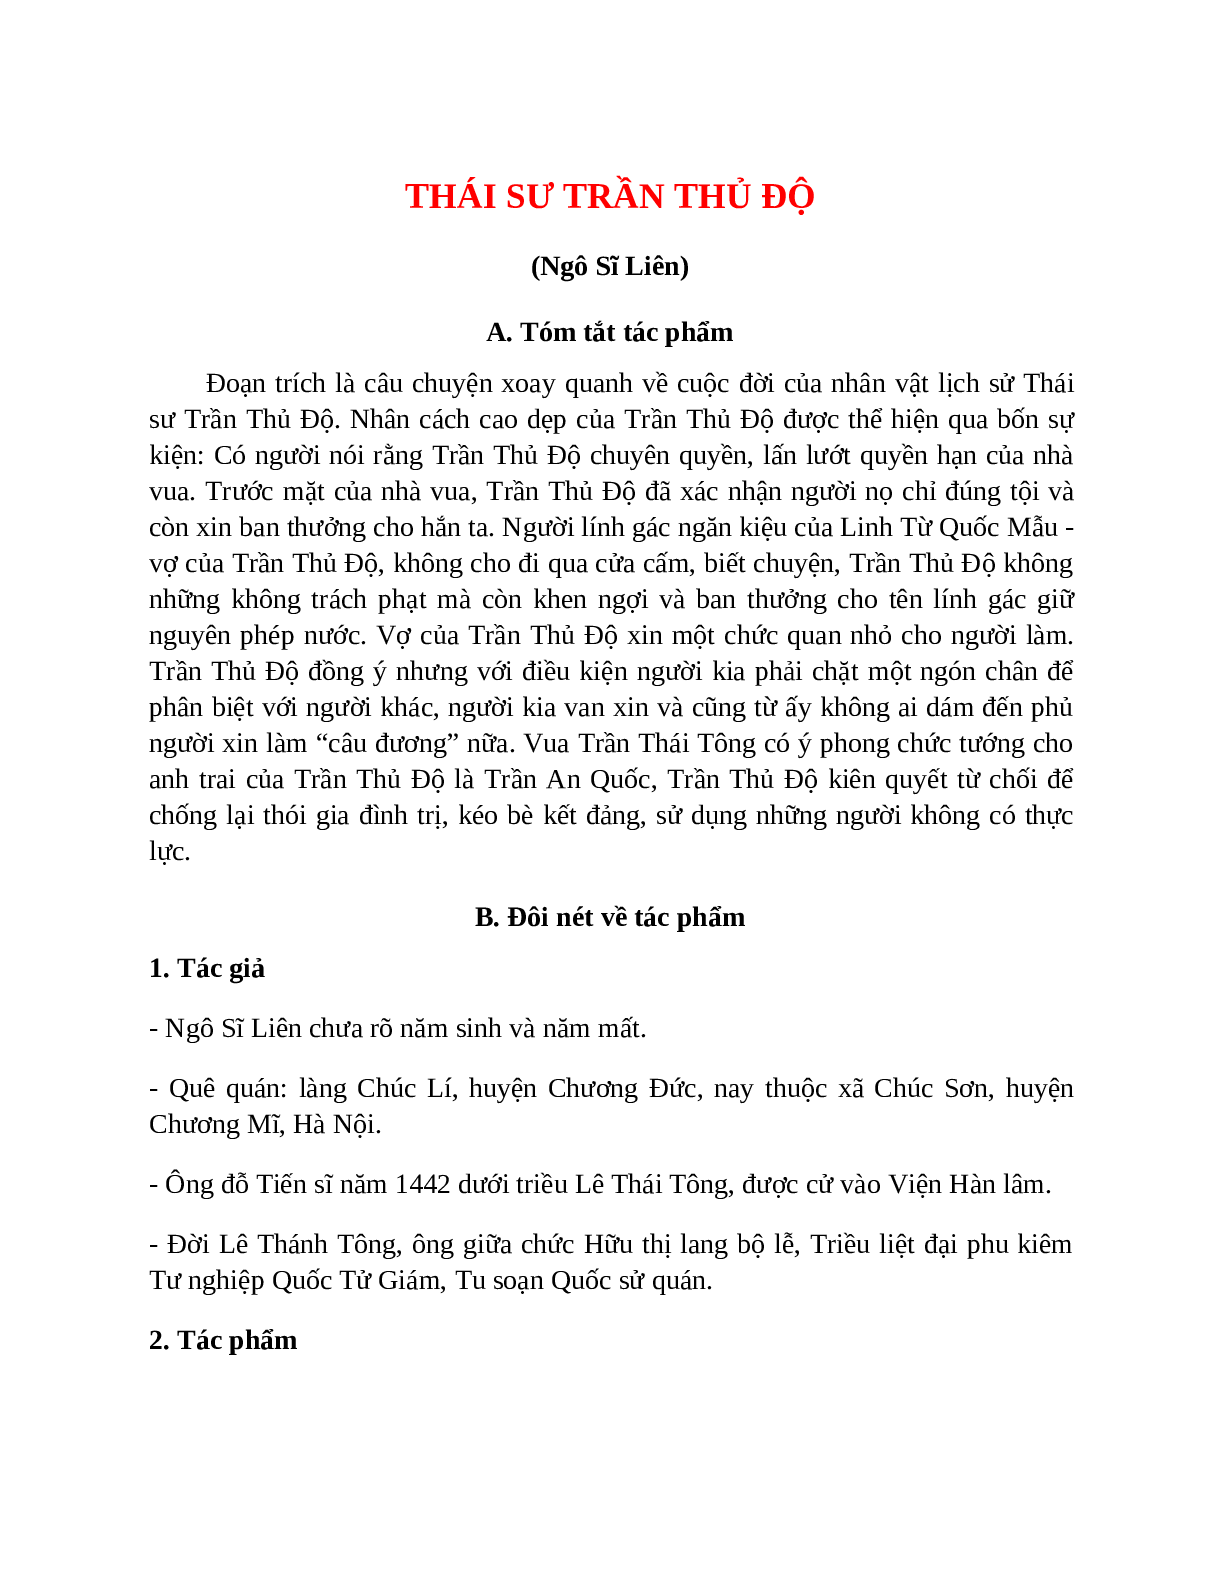 Thái sư Trần Thủ Độ - Tác giả tác phẩm – Ngữ văn lớp 10 (trang 1)